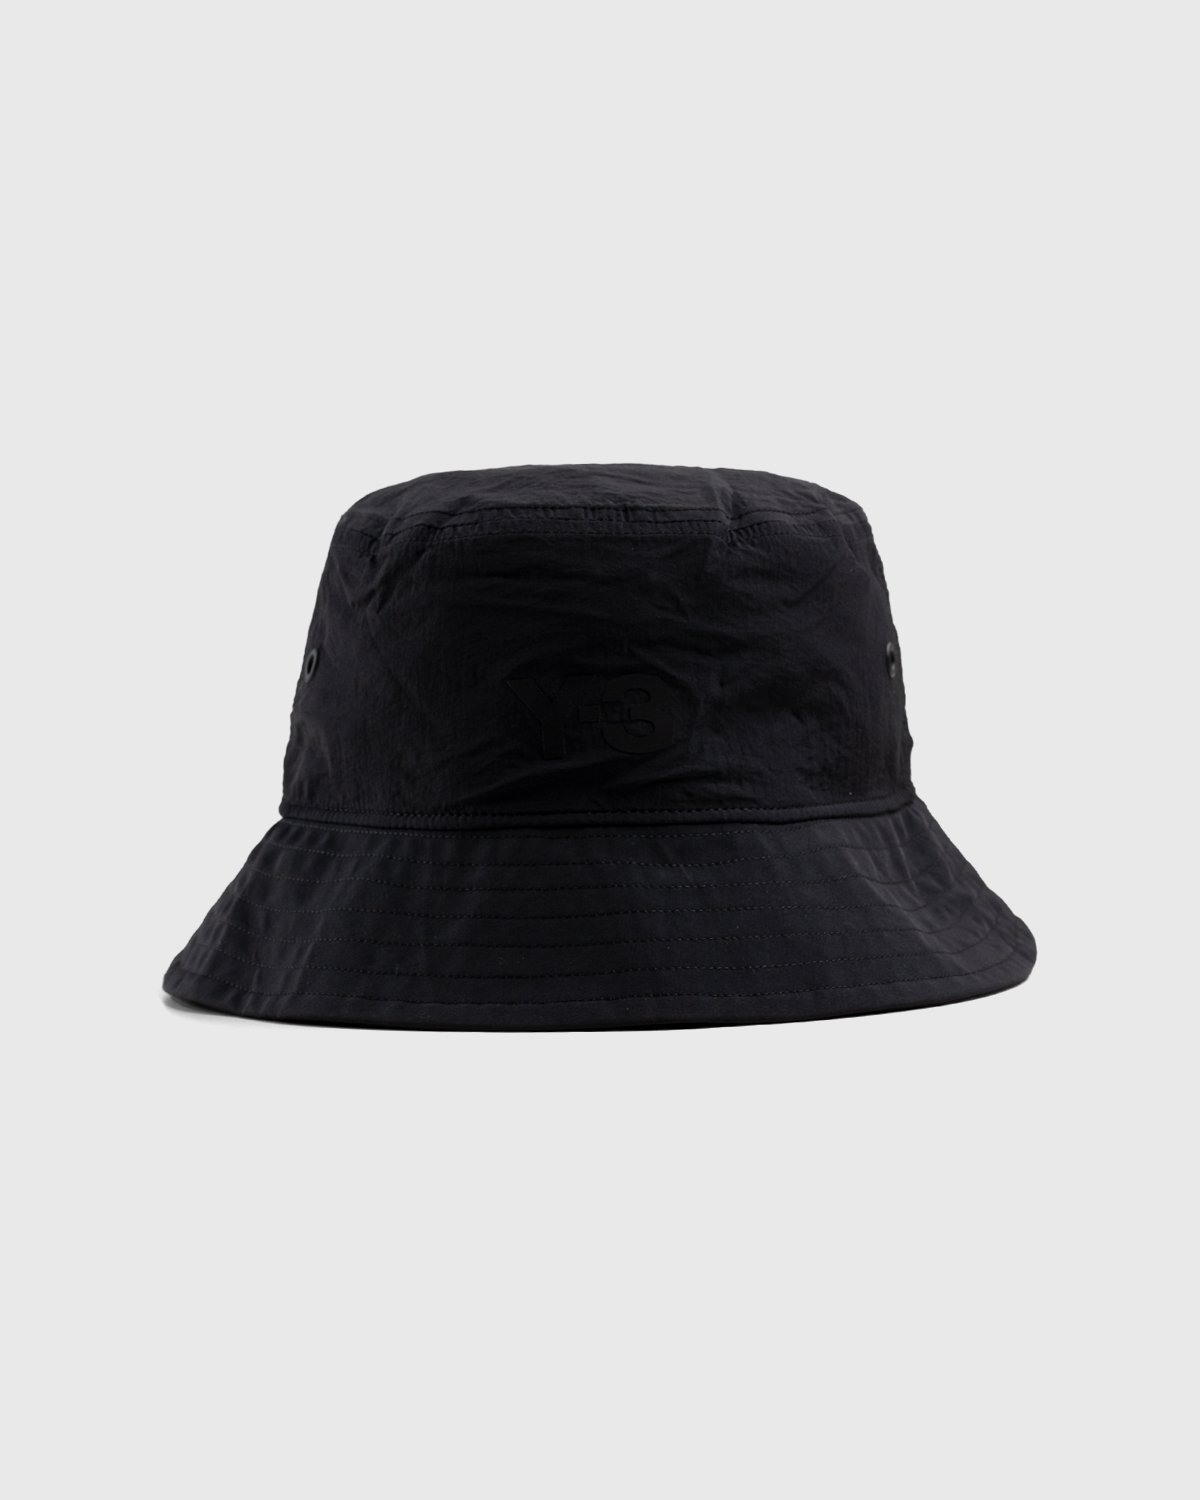 Y-3 - Logo Bucket Hat Black - Accessories - Black - Image 1